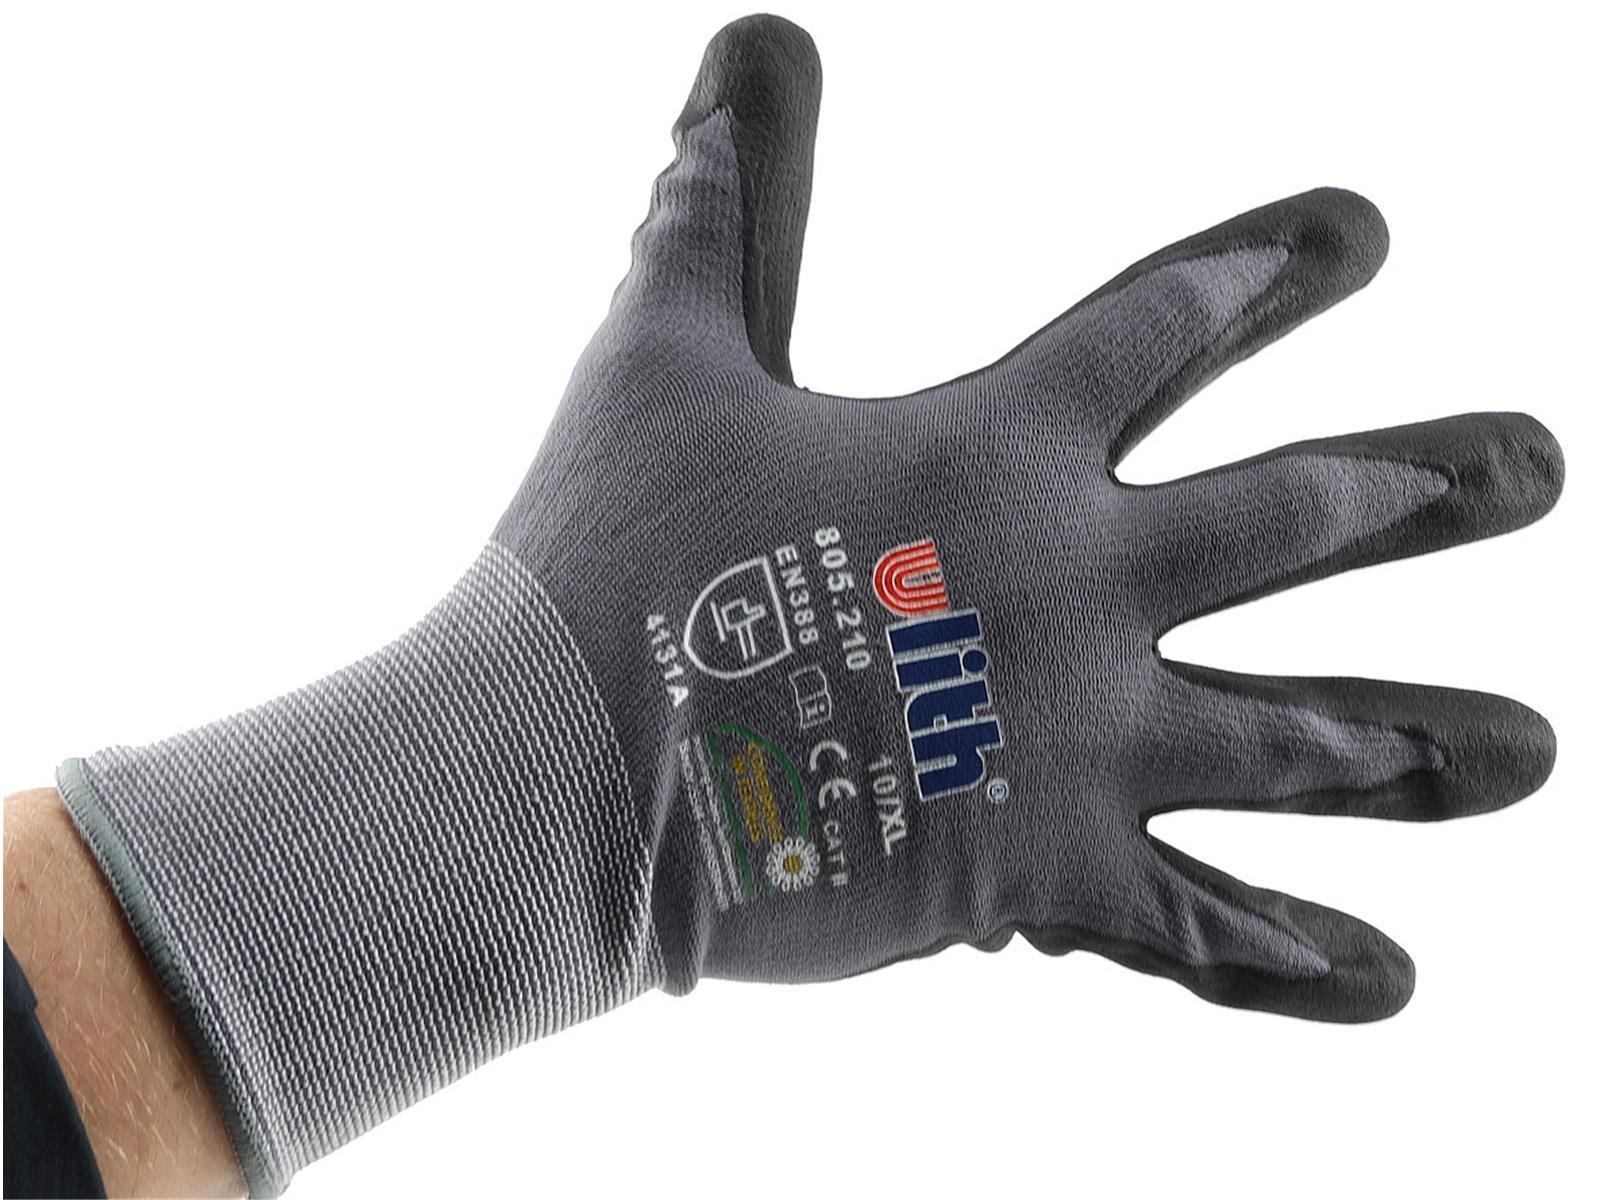 Profi Arbeits-Handschuhe mit Kautschuk-Beschichtung, Ökotex 100, Größe 10